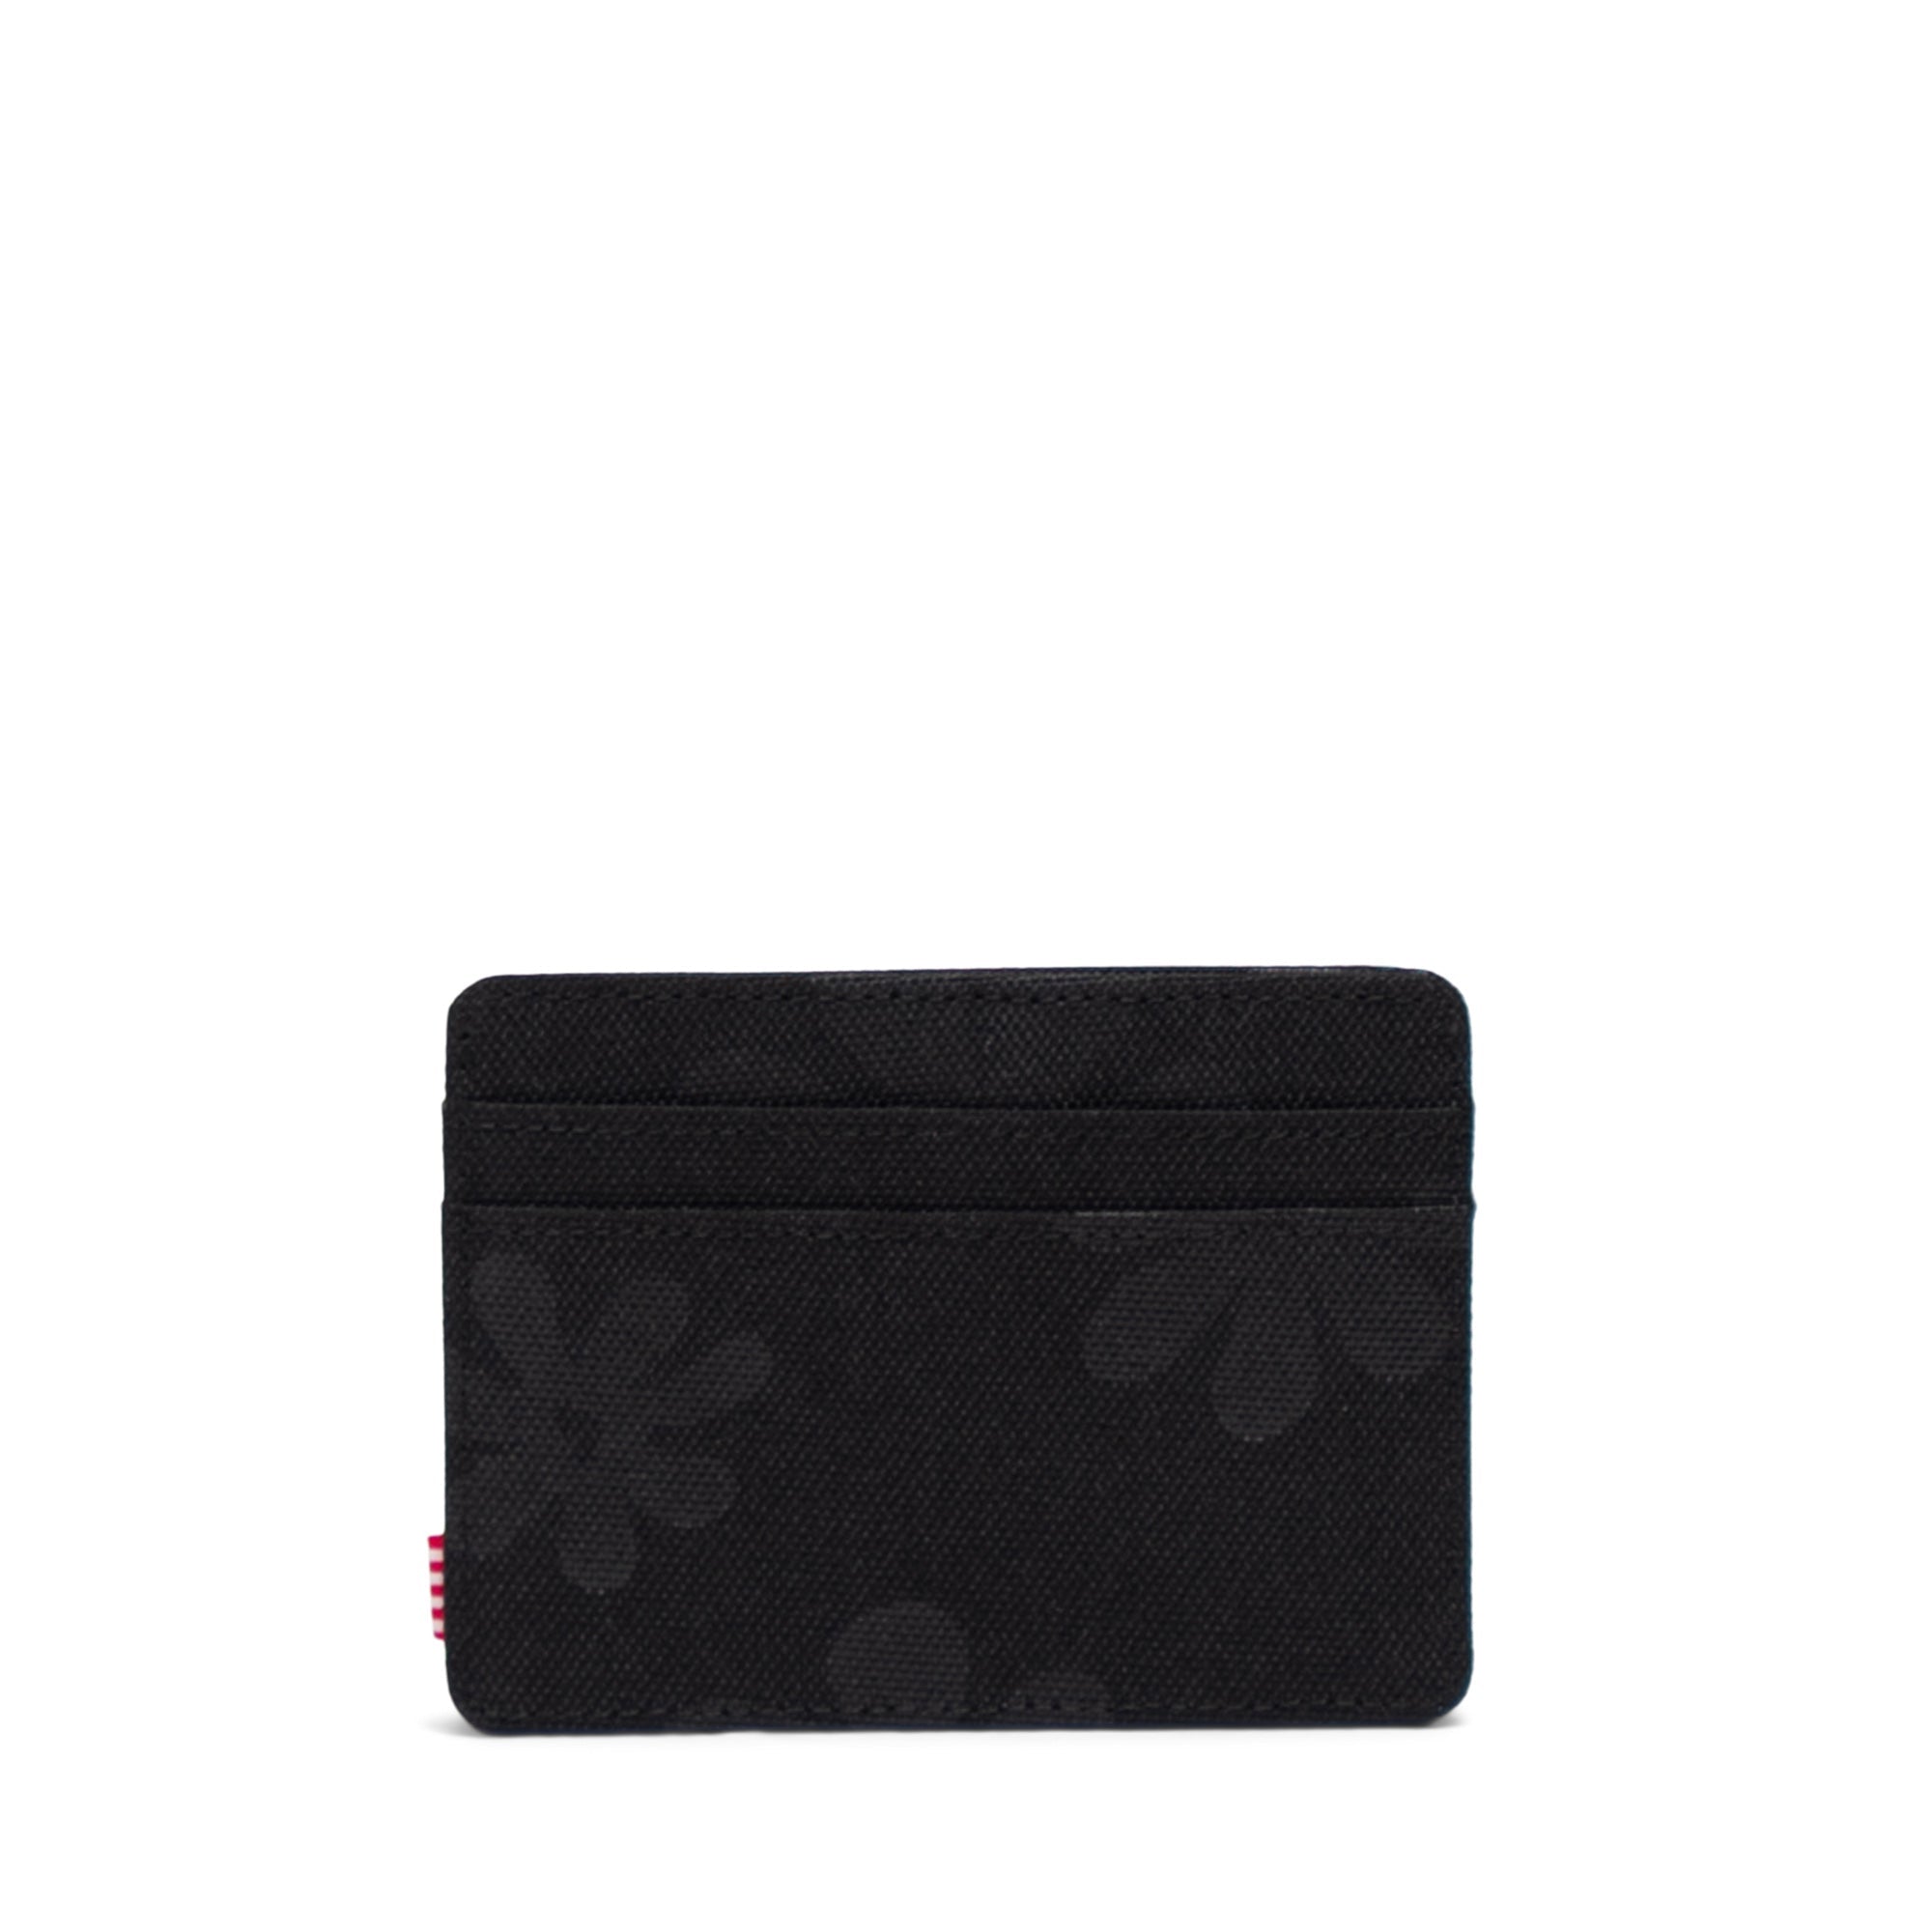 Charlie RFID + Wallet SALE